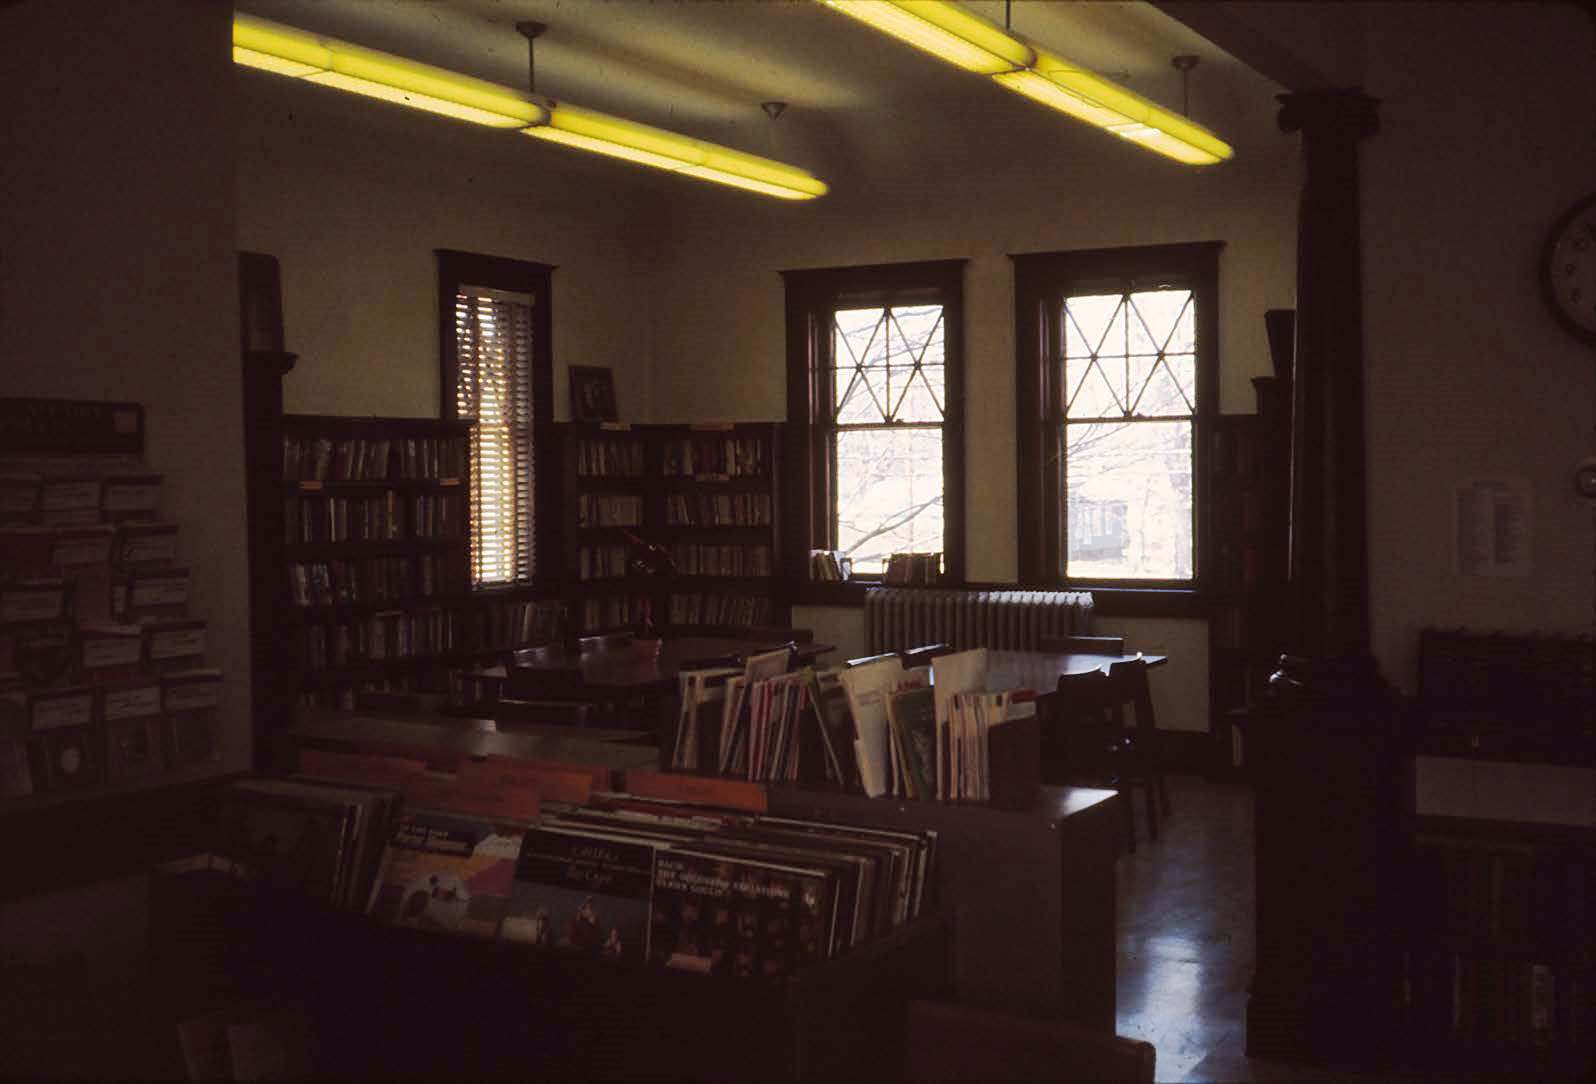 1974-Library-slides